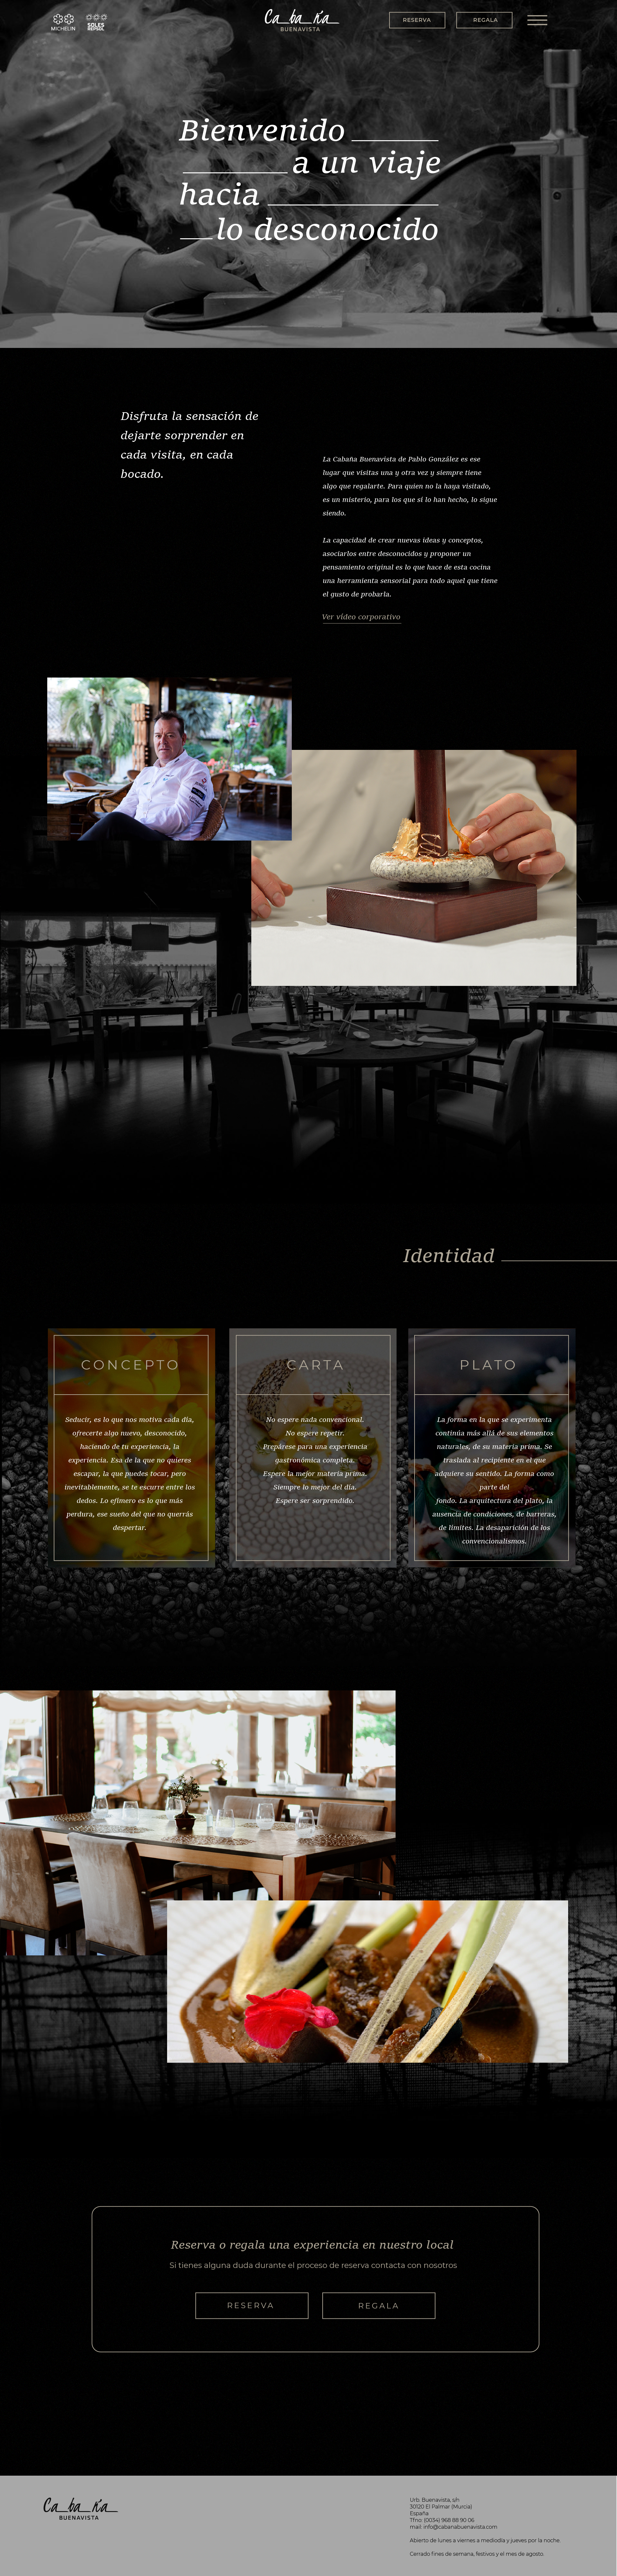 Diseño web Restaurante La Cabaña